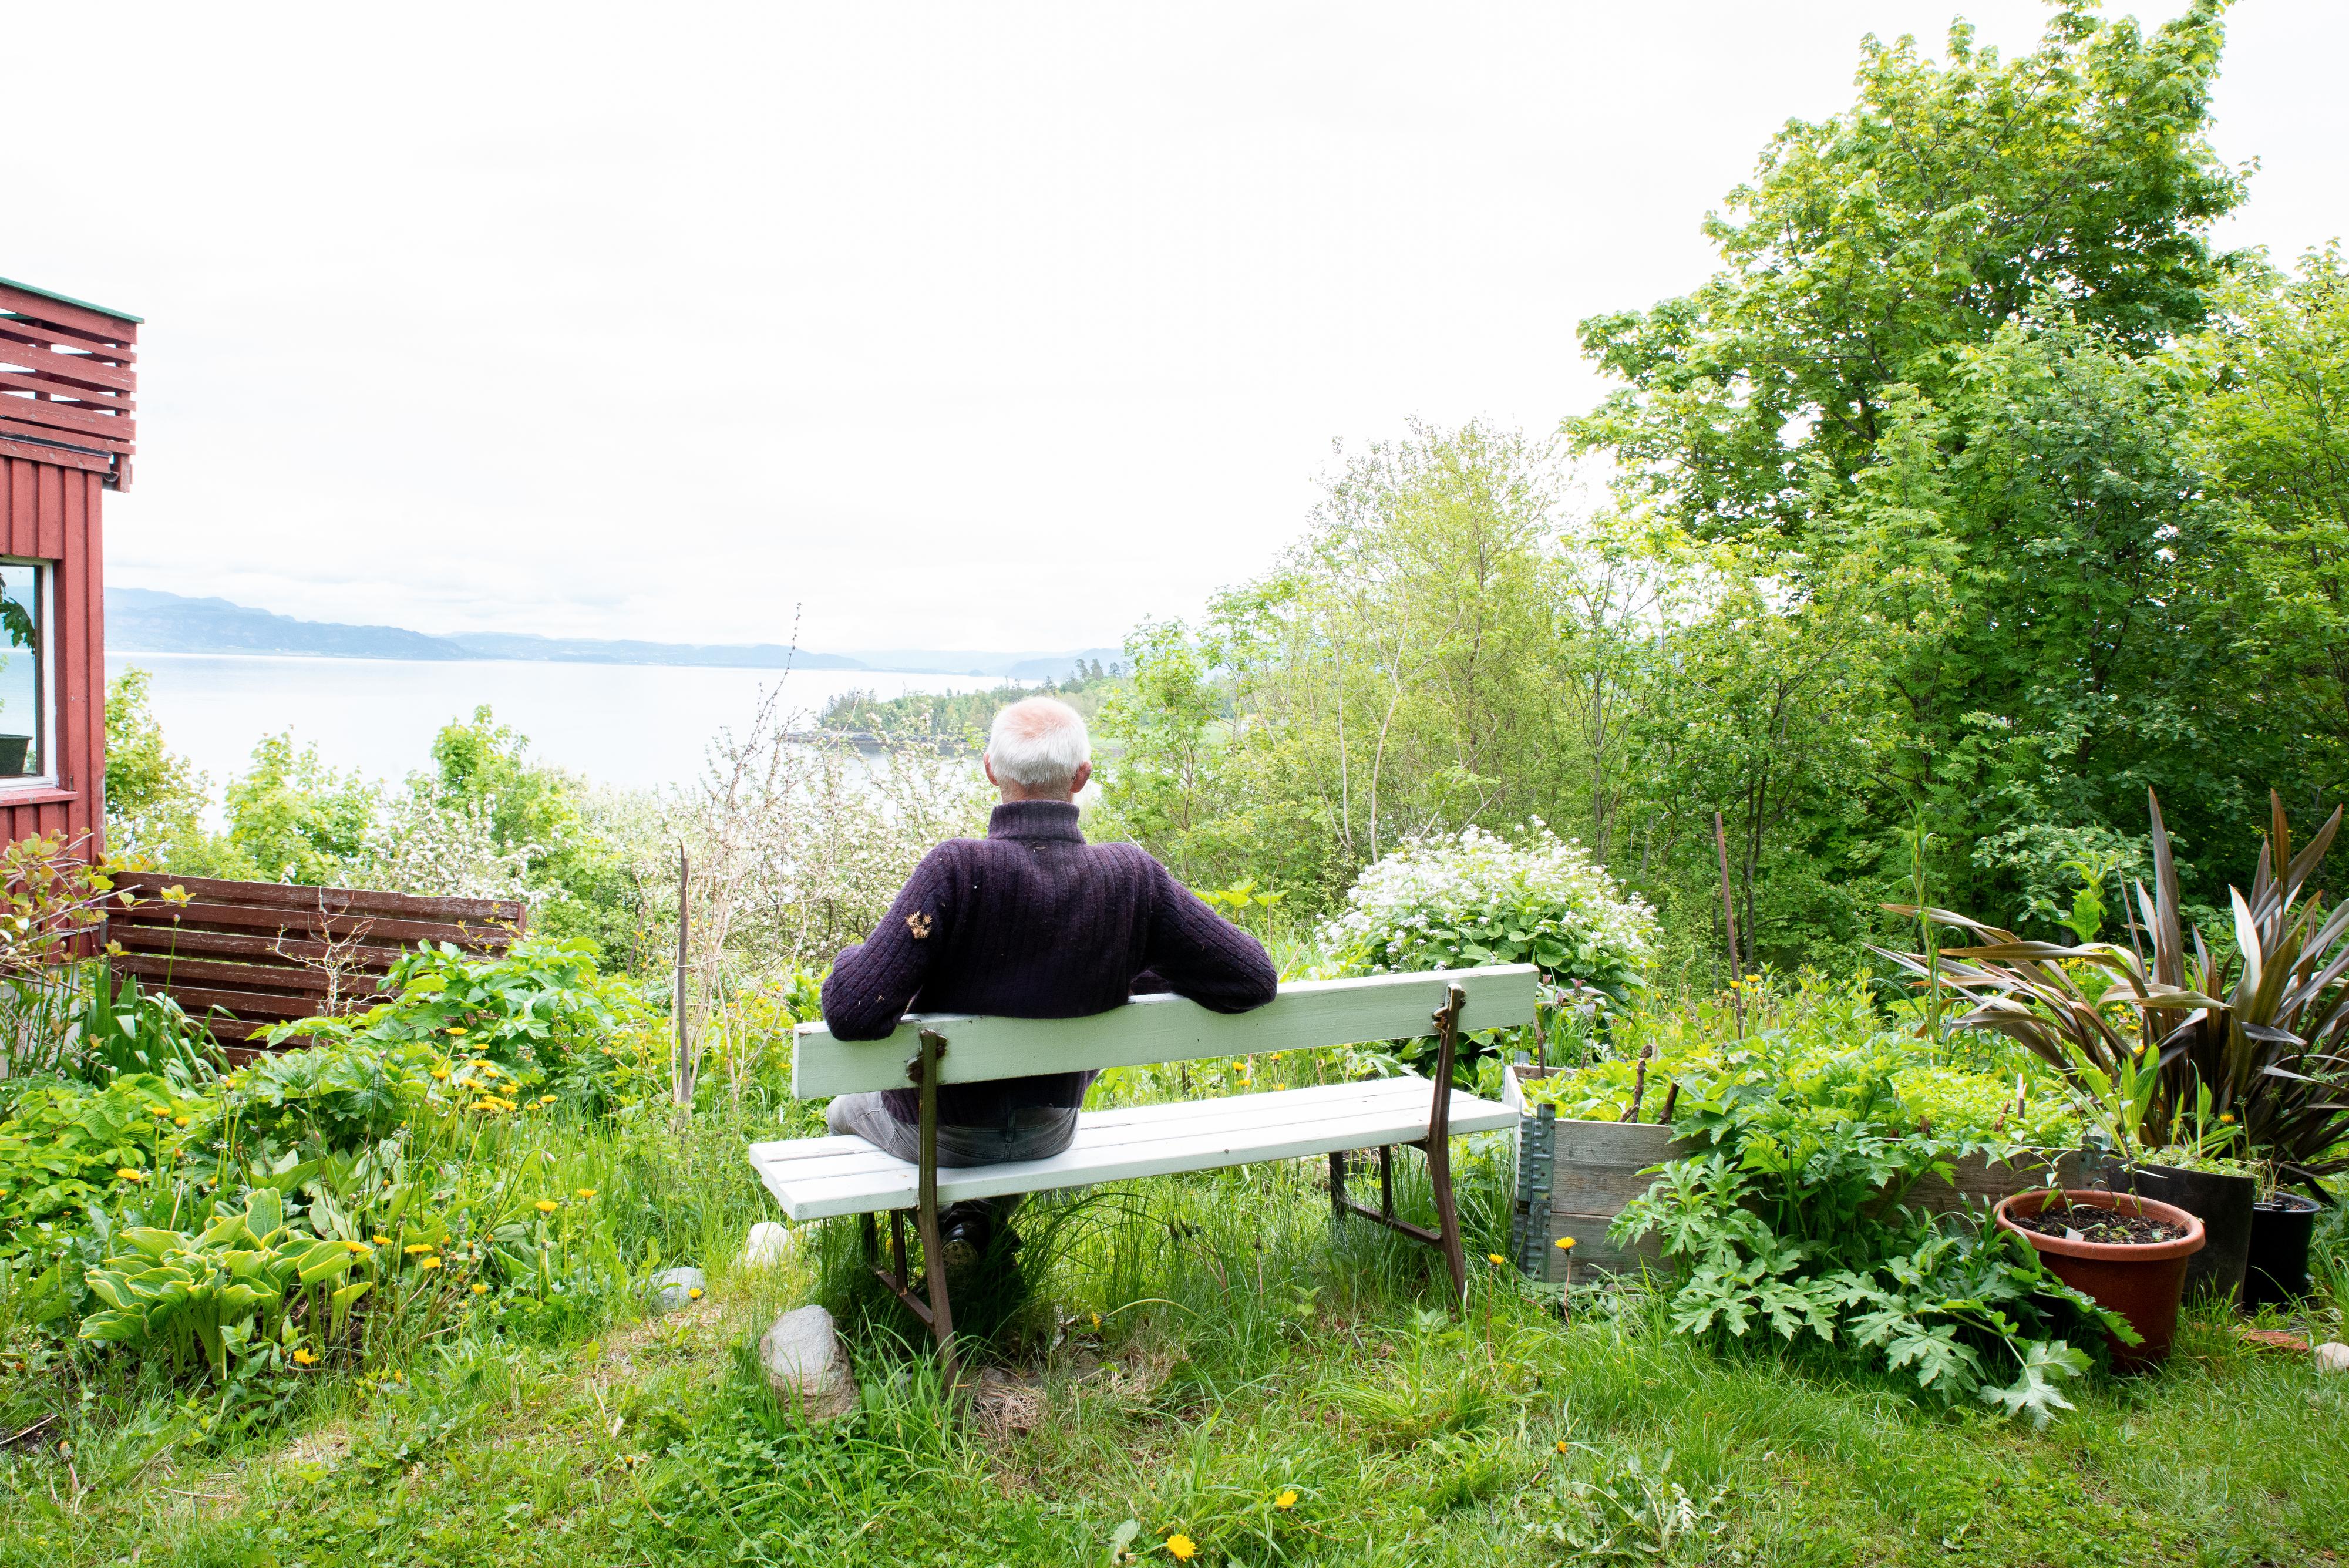 NYTER UTSIKTEN: Stephens hage ligger på en bergknaus vendt mot nordøst med utsikt utover Trondheimsfjorden. Mot nord kan man skimte Stjørdal og vestover ligger Frosta.